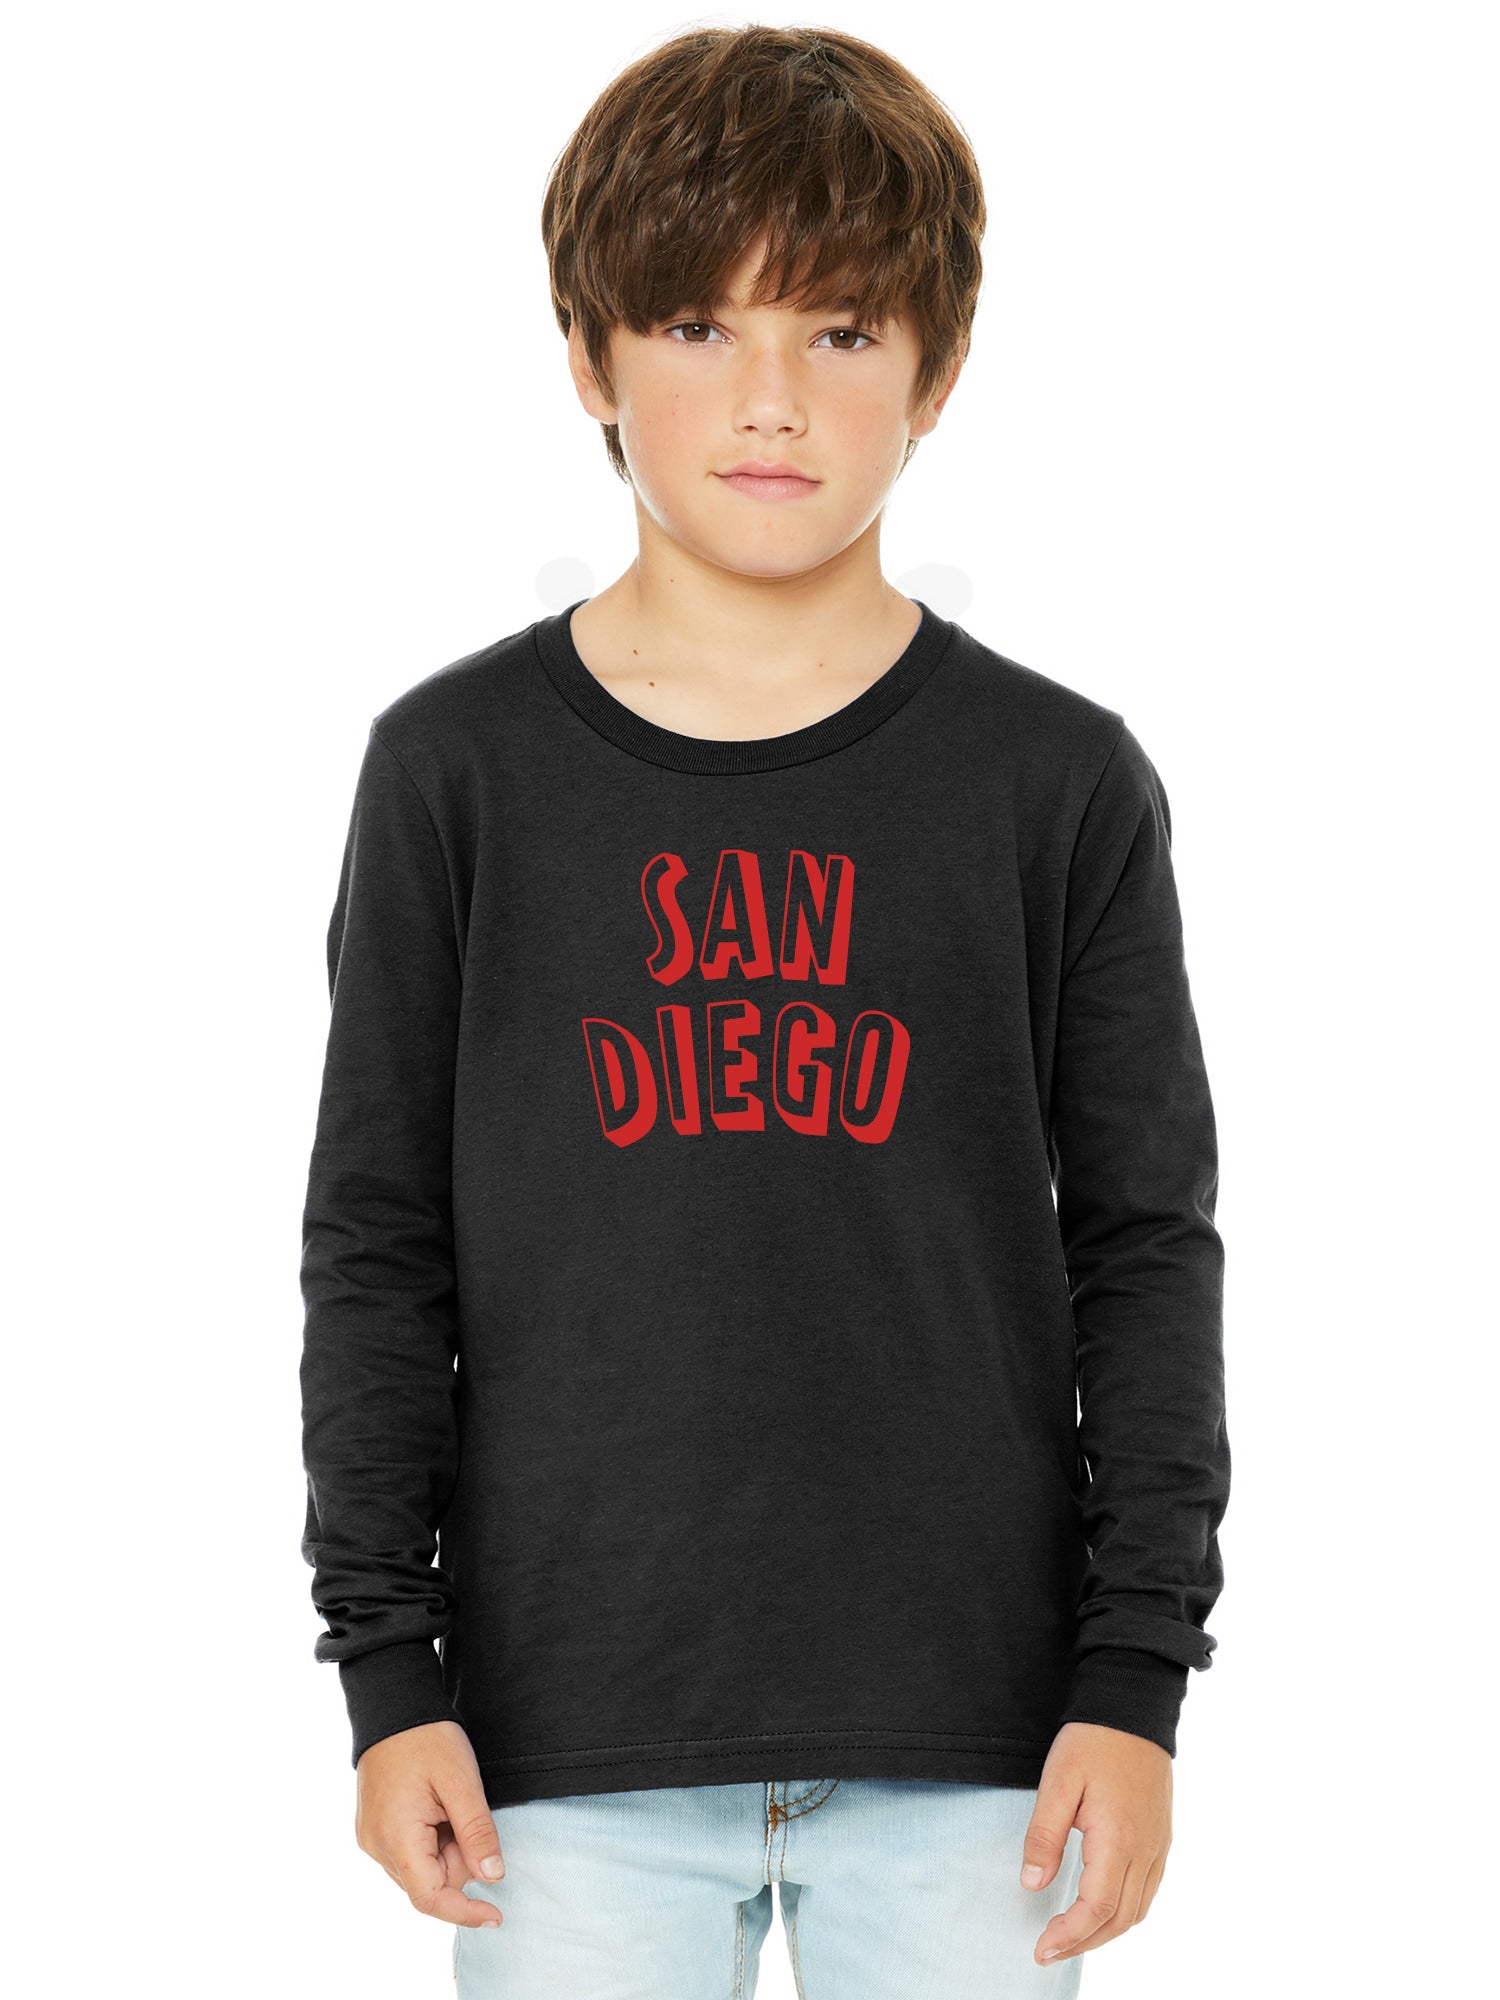 San Diego Clothing